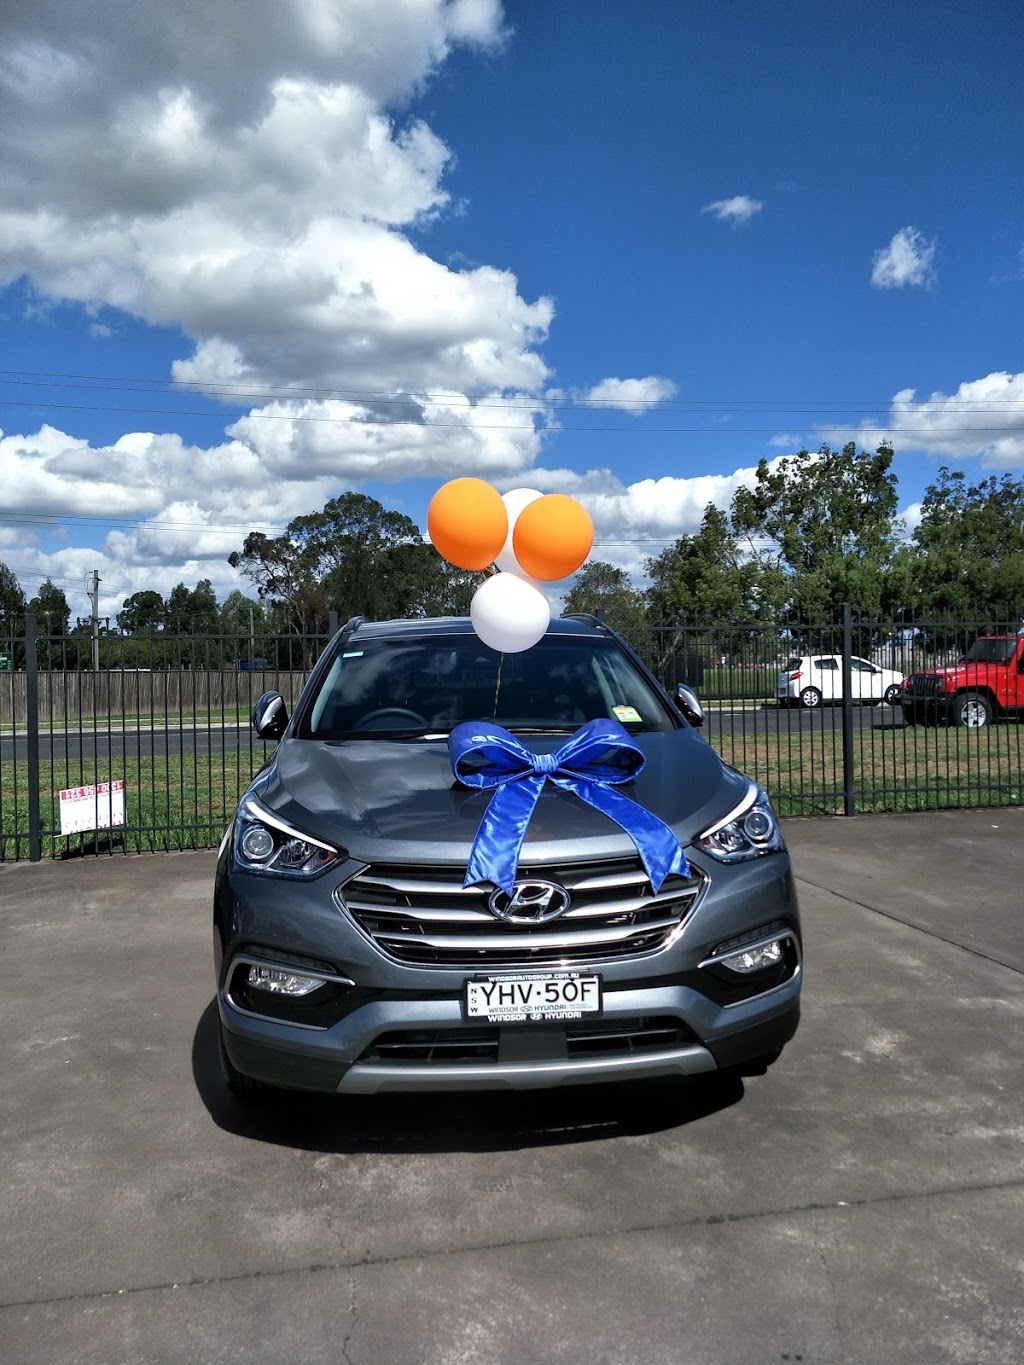 Windsor Auto Group | car dealer | 130 Windsor Rd, Mcgraths Hill NSW 2756, Australia | 0245770400 OR +61 2 4577 0400